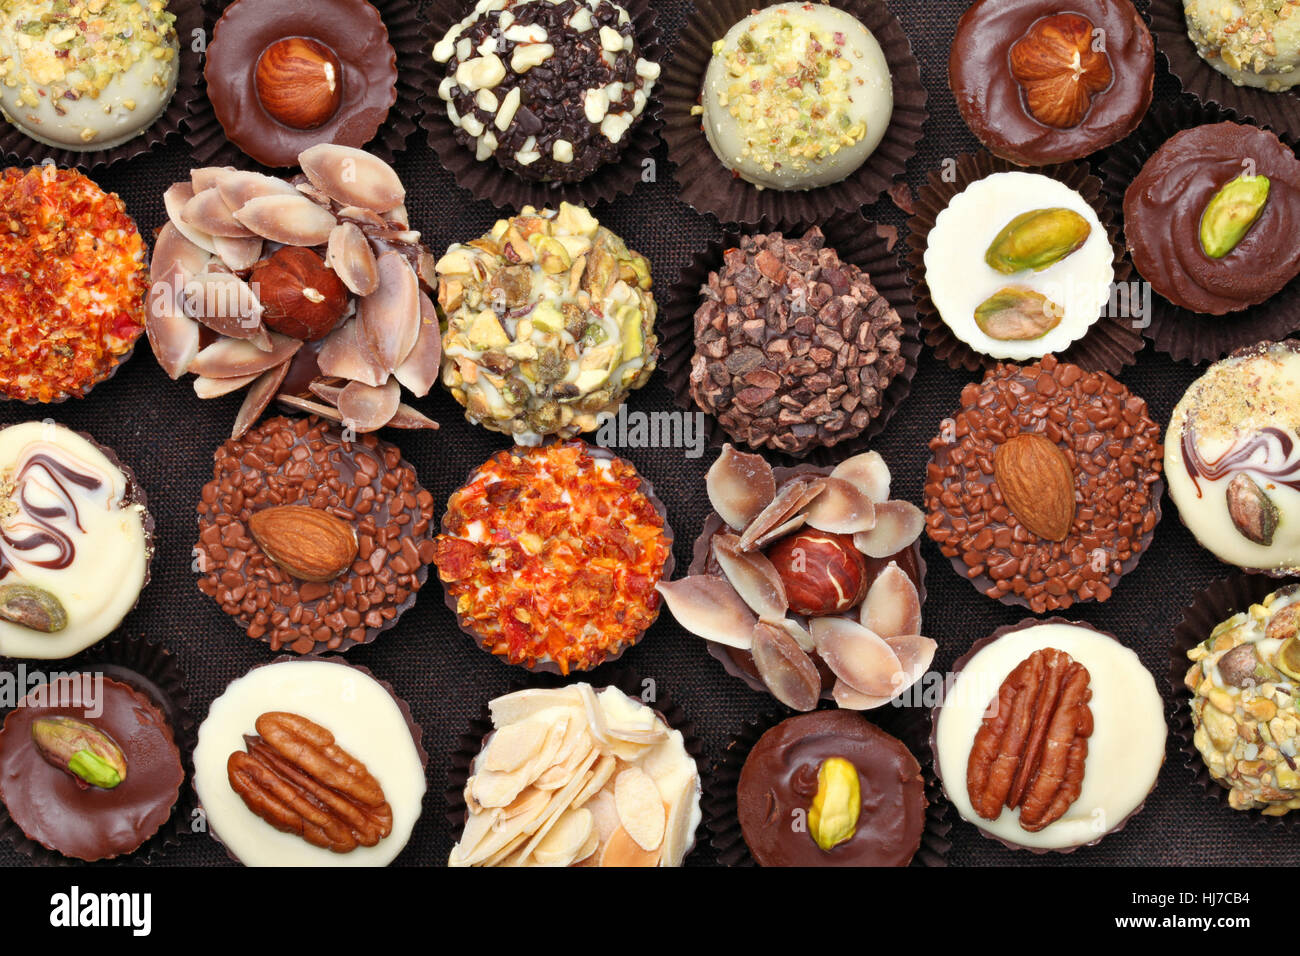 Imagen de fondo de delicioso chocolate artesanal textura Foto de stock